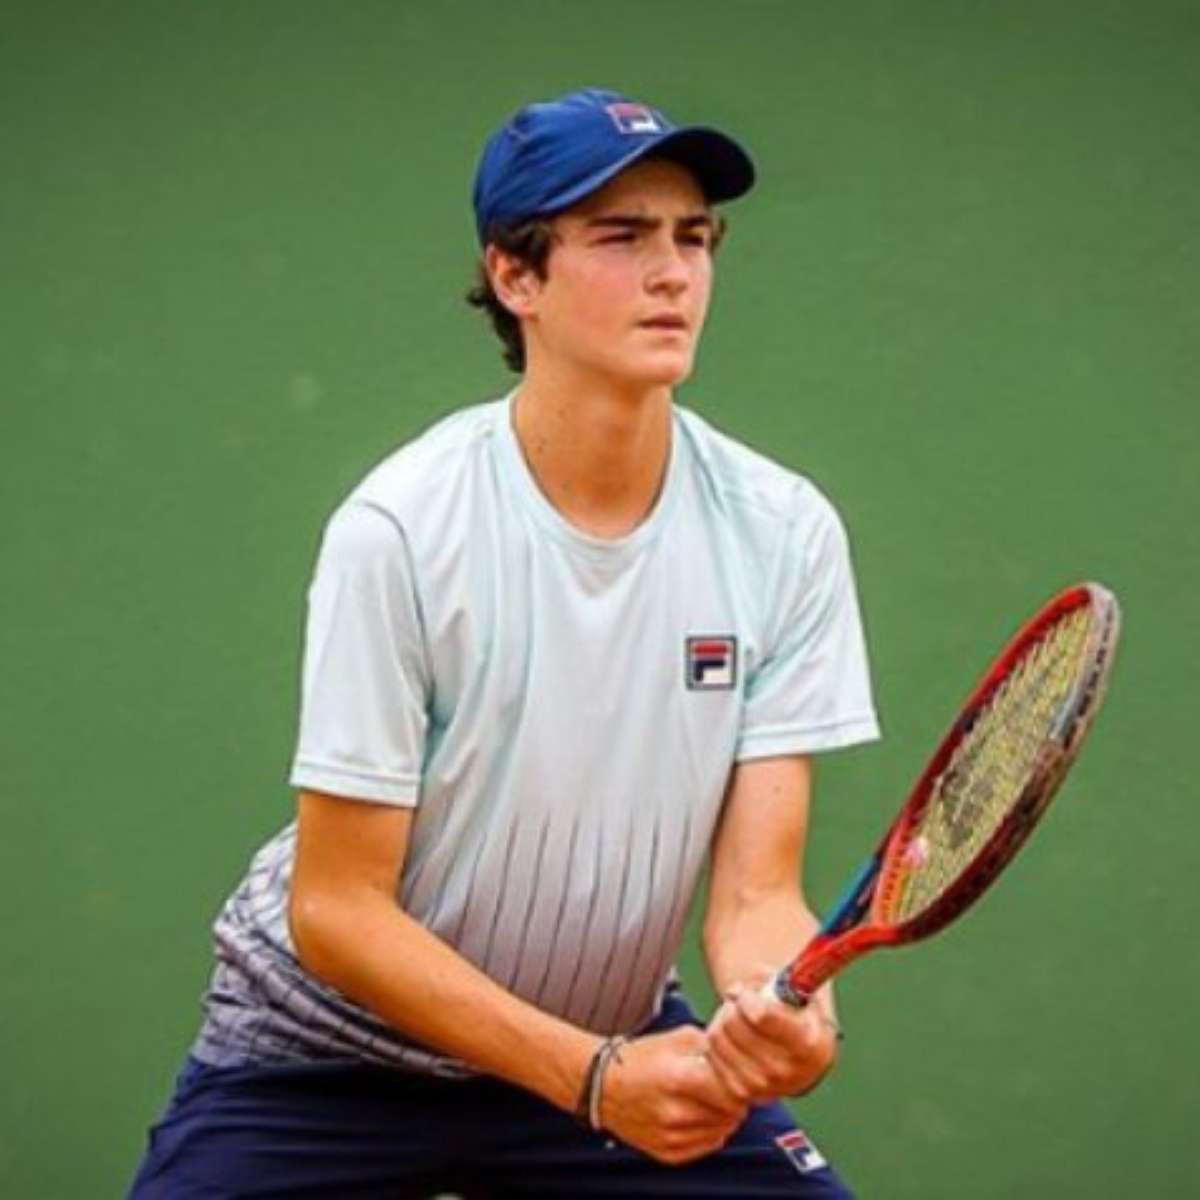 João Fonseca brilha e é campeão do US Open juvenil - Tenis News